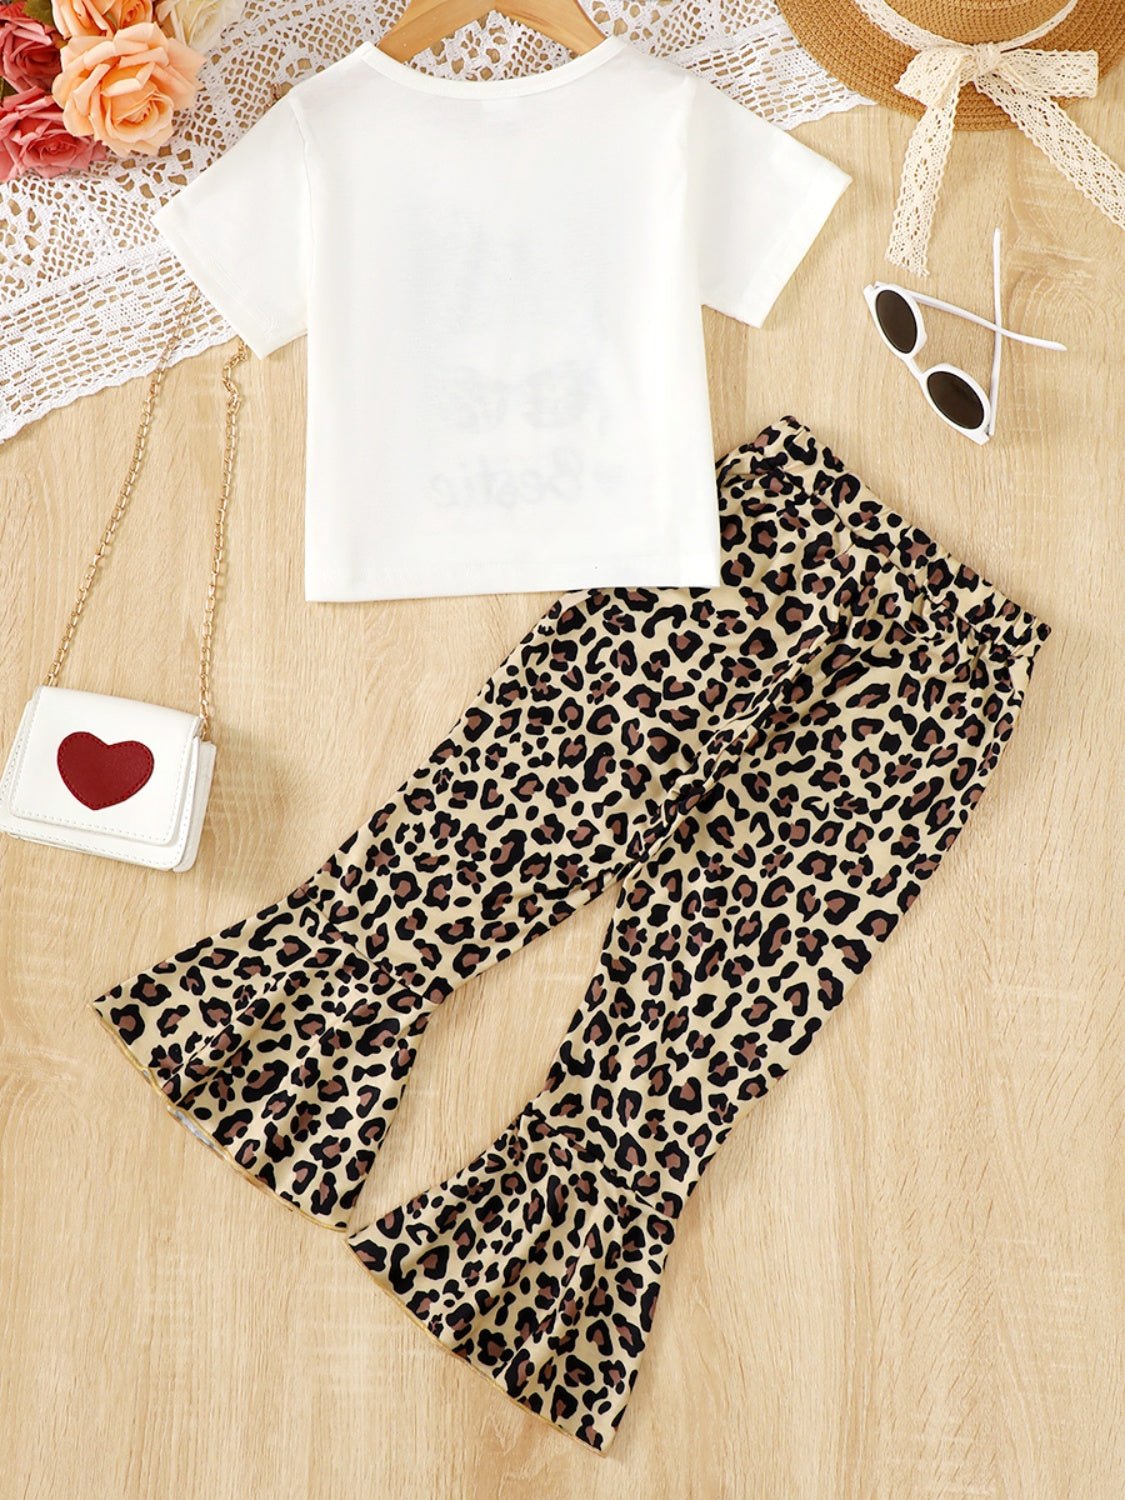 BESTIE Round Neck T-Shirt and Leopard Pants Set | Sugarz Chique Boutique